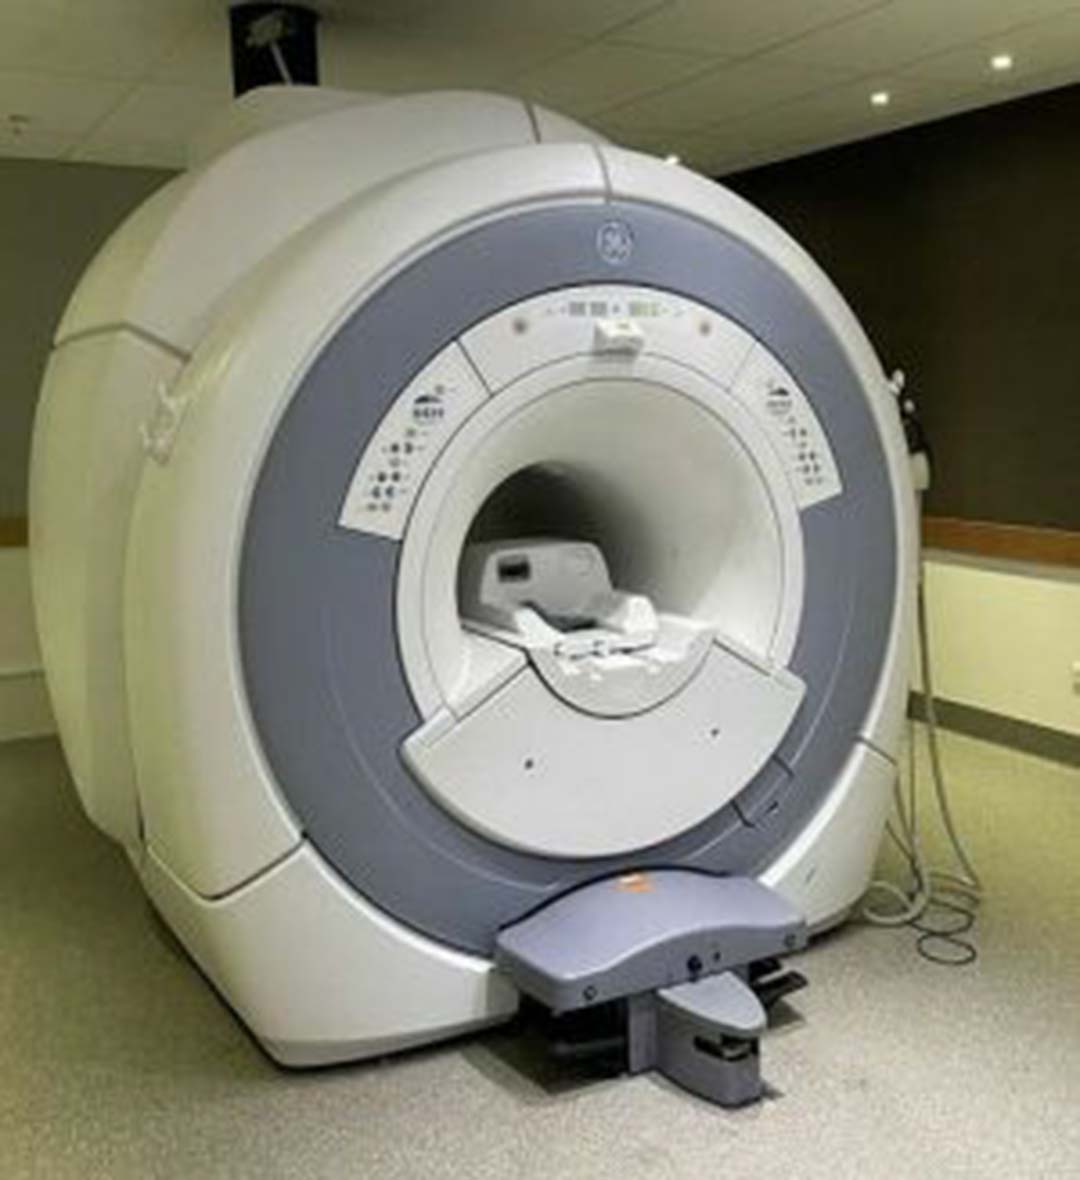 2012 GE Optima MR360 1.5T MRI